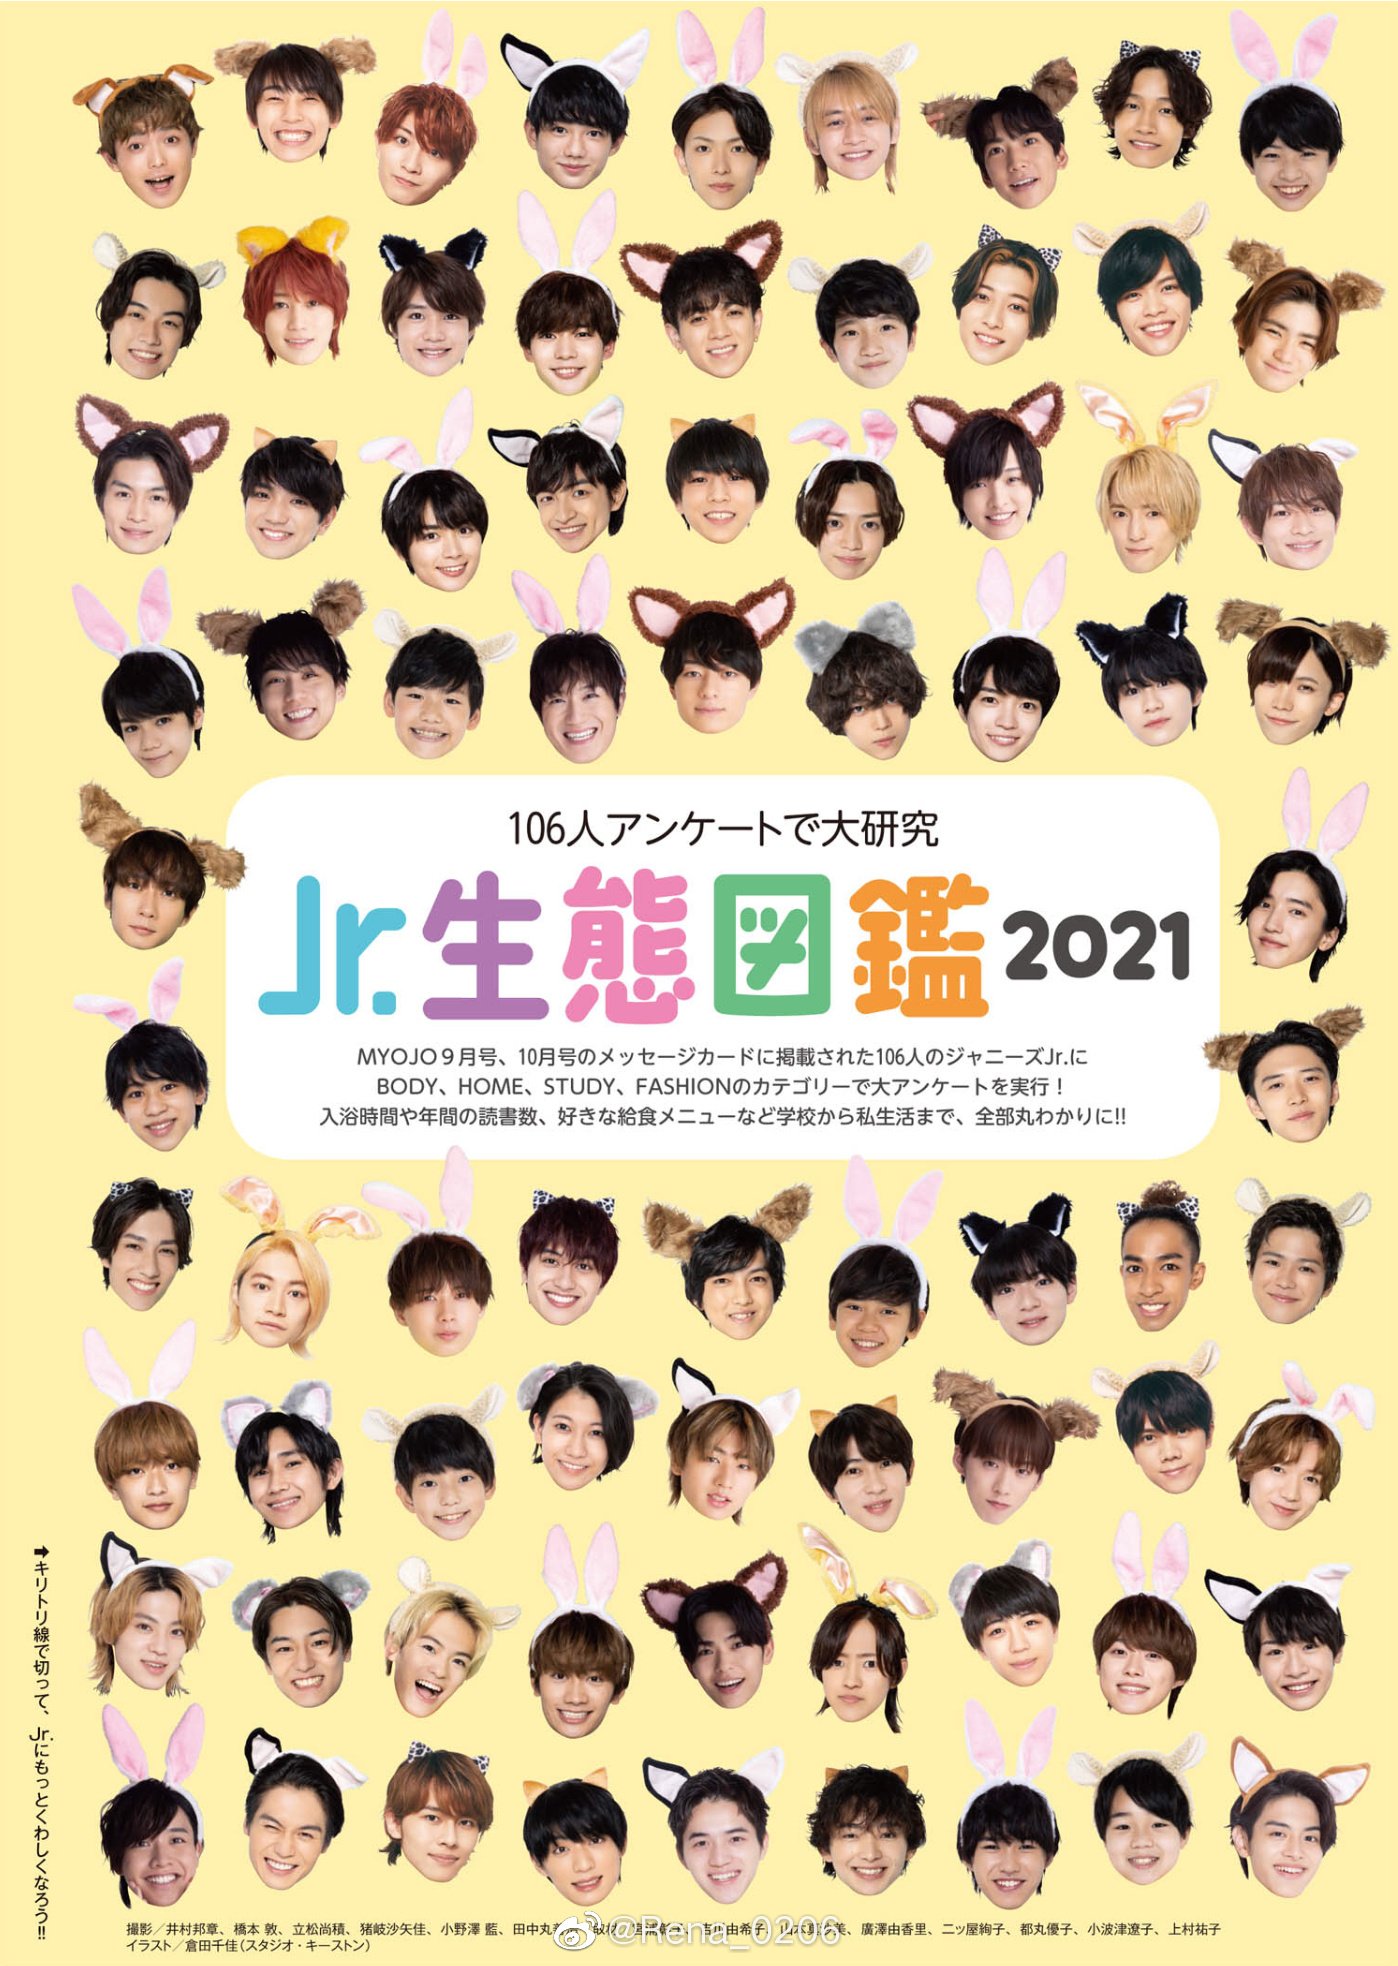 Chimi ๑ ㅂ و 7 Men Samurai On Ecological Picture Book Of Jr 21 Myojo 7men侍 T Co Cnkosd4chw Twitter